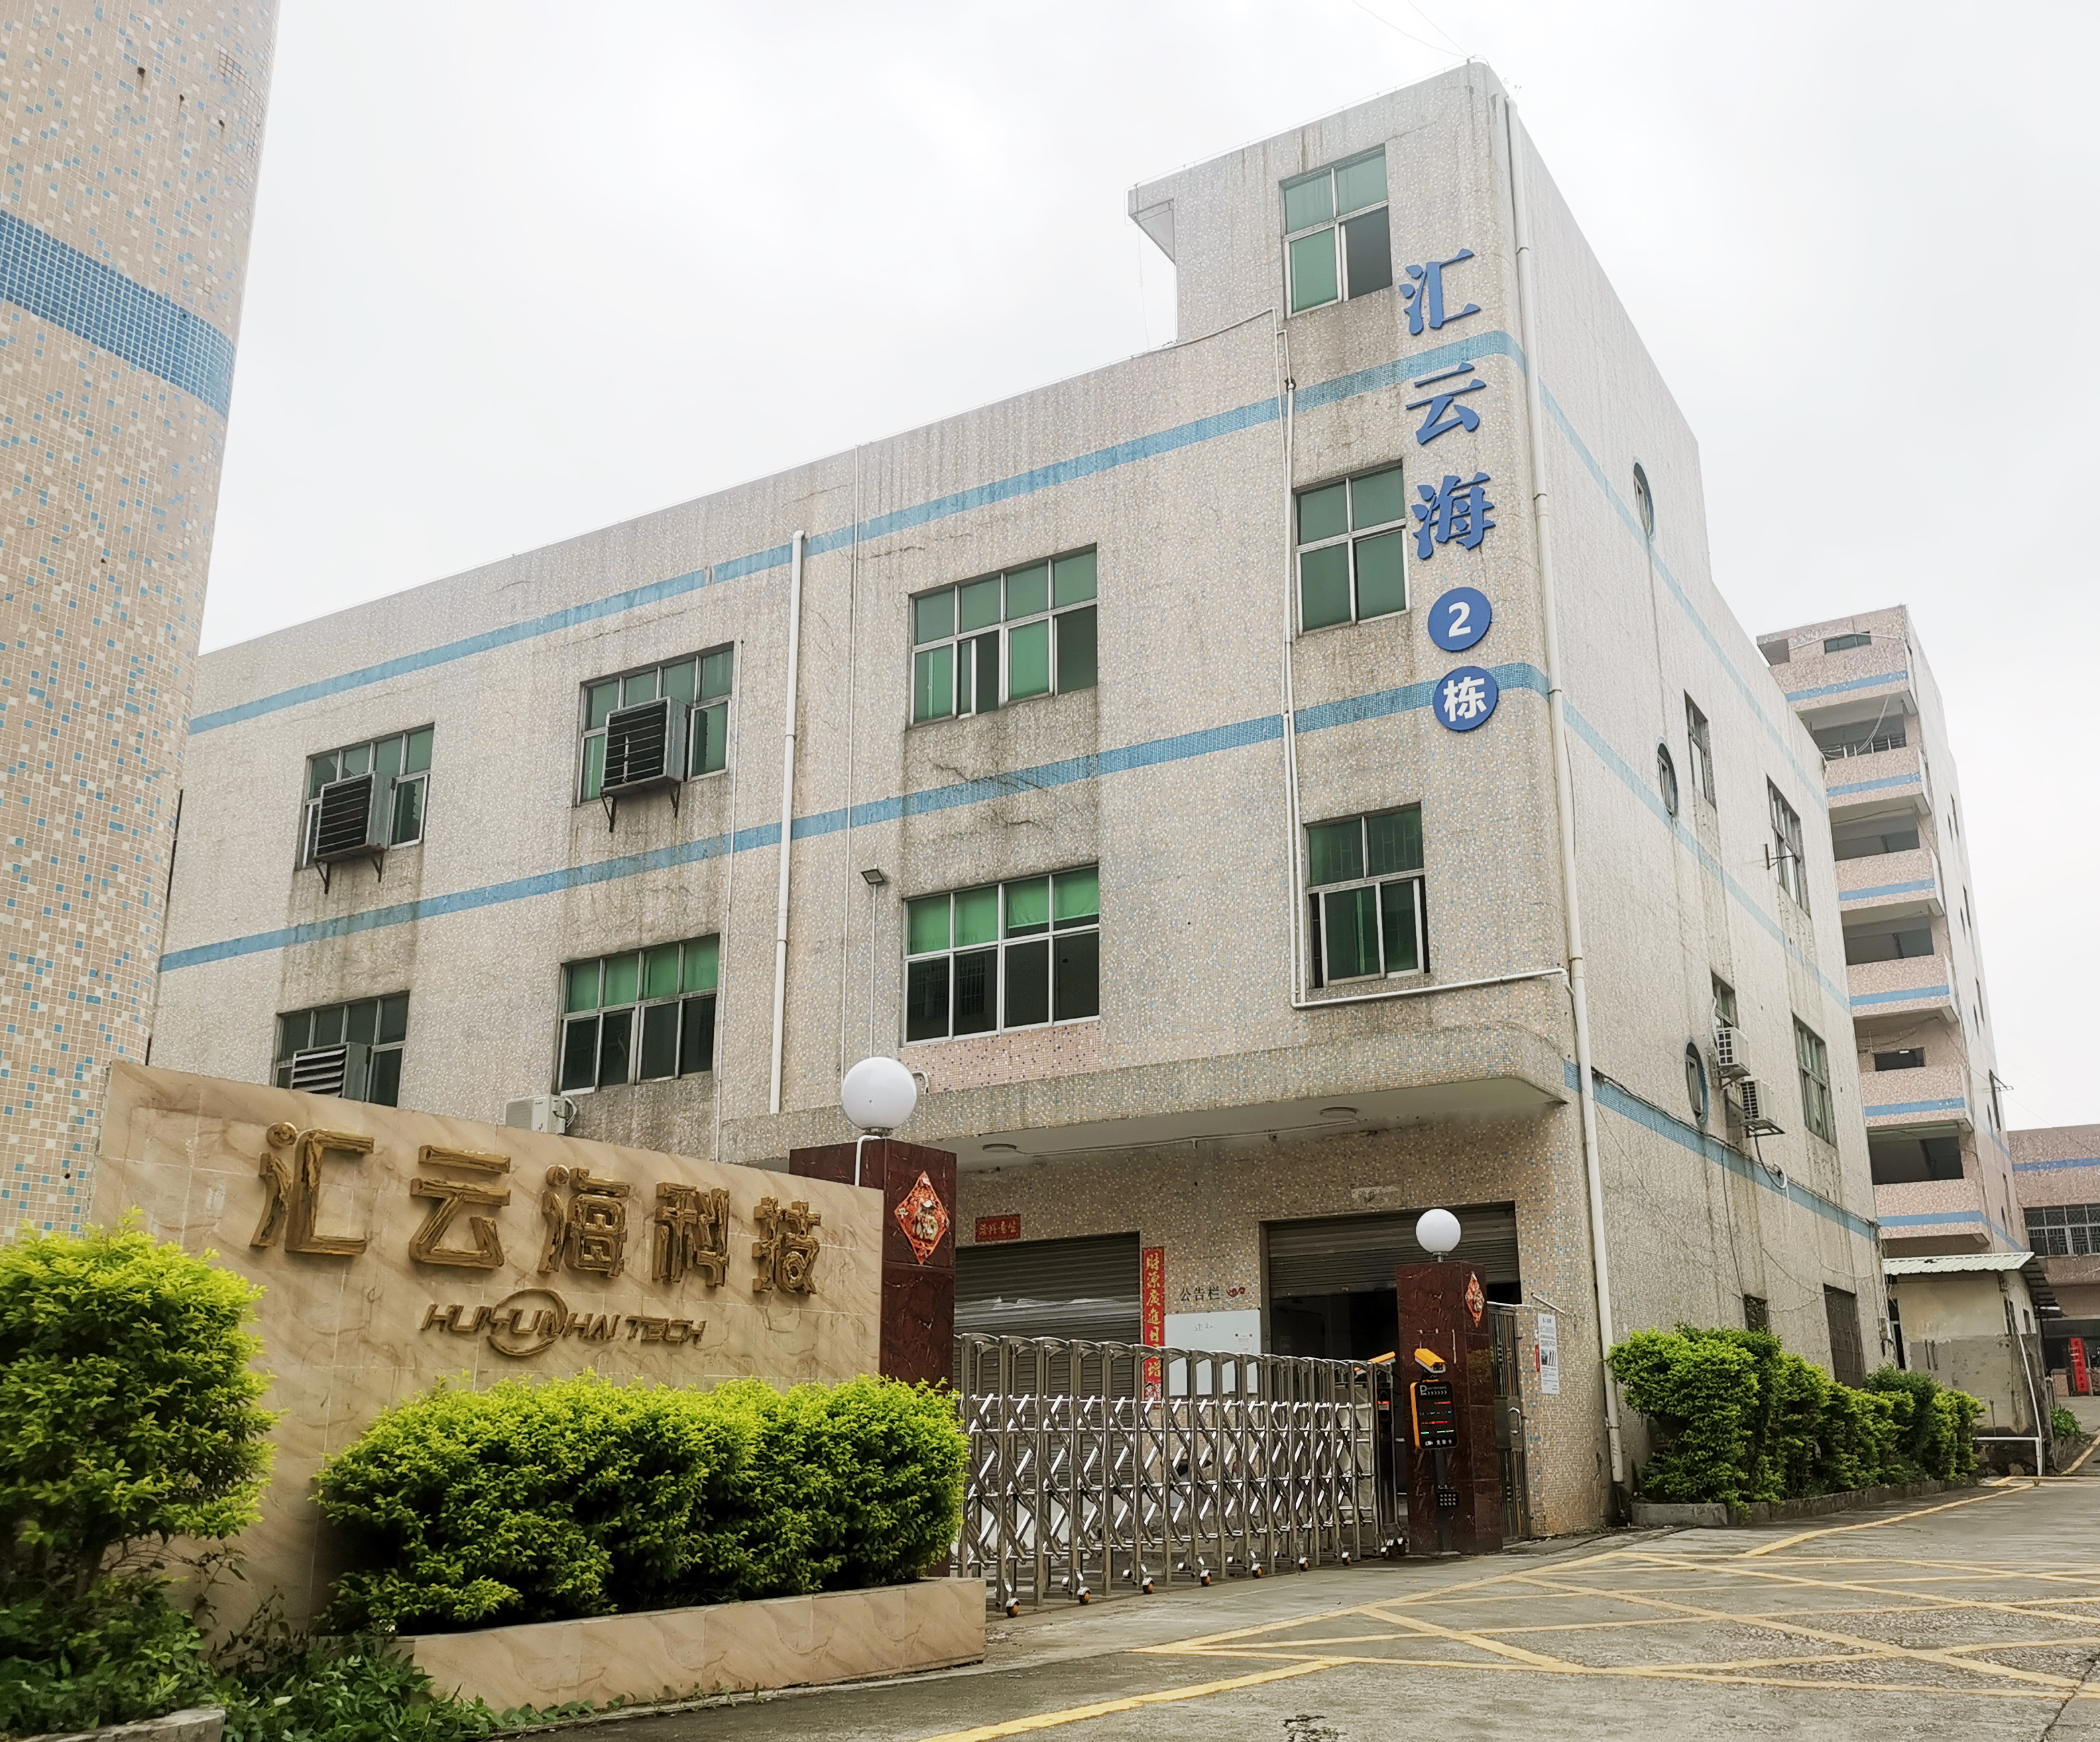 شركة Shenzhen Huiyunhai Technology ، Ltd